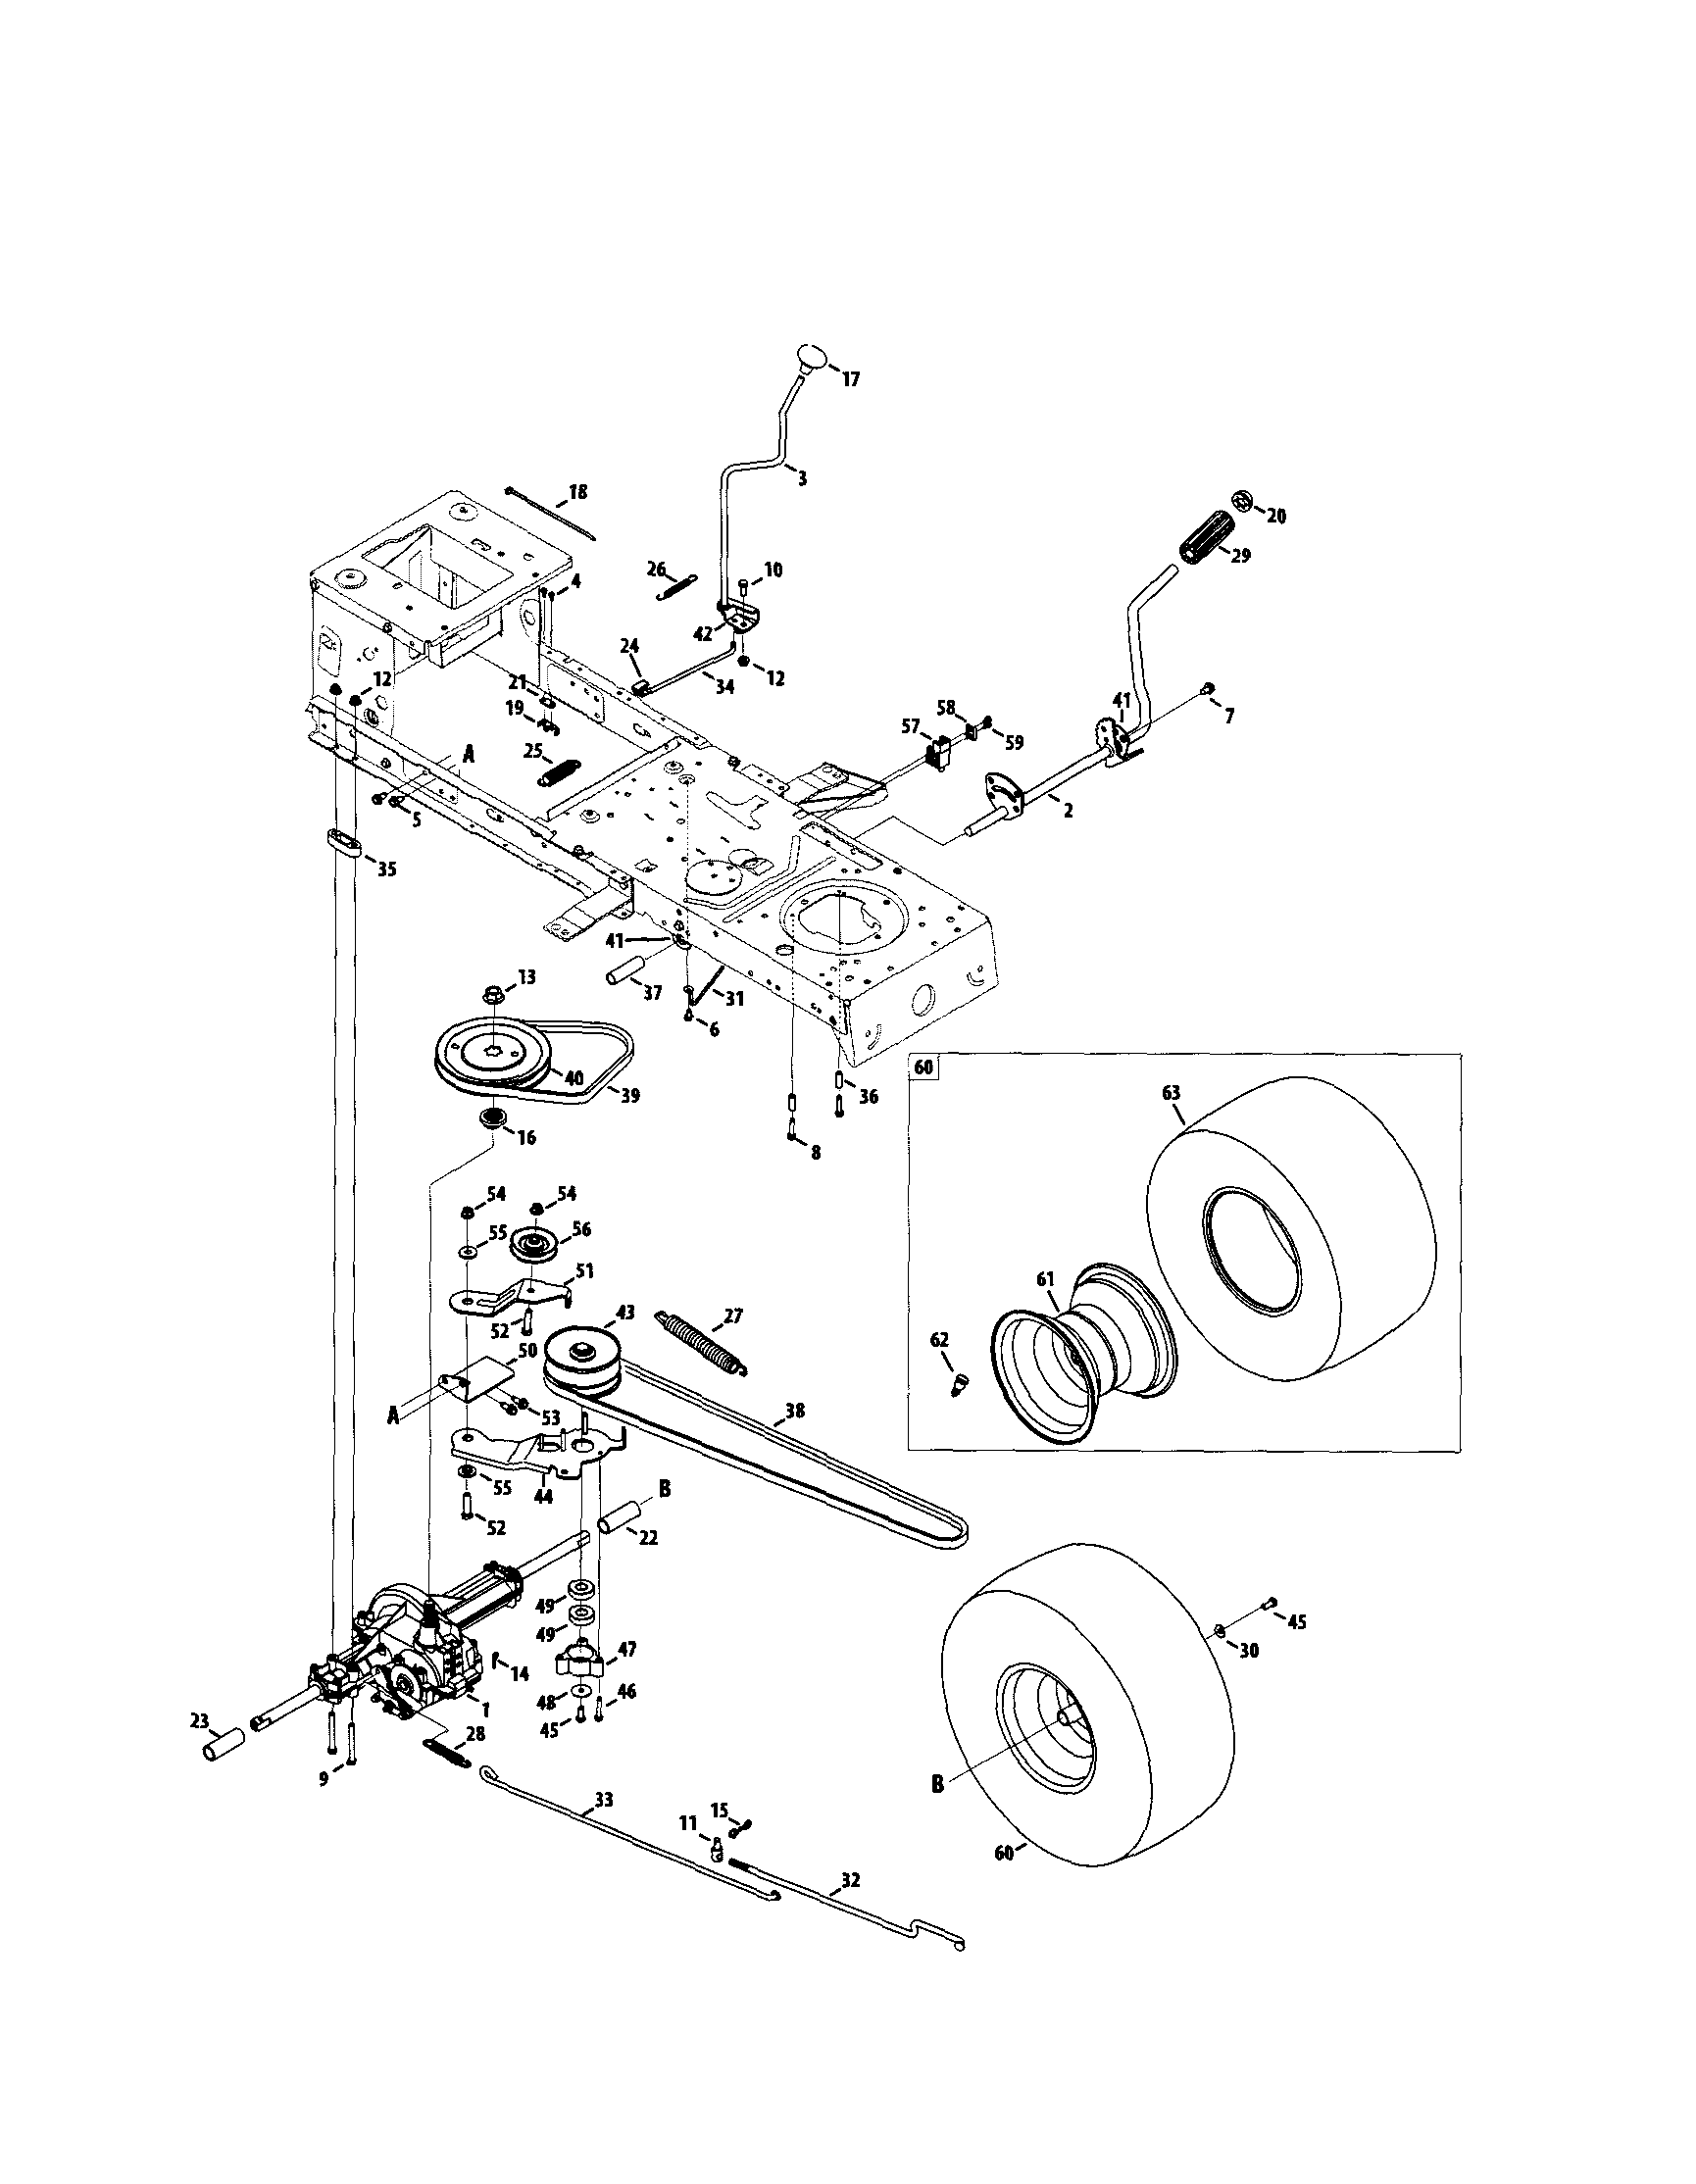 31 Craftsman Riding Mower Transmission Diagram